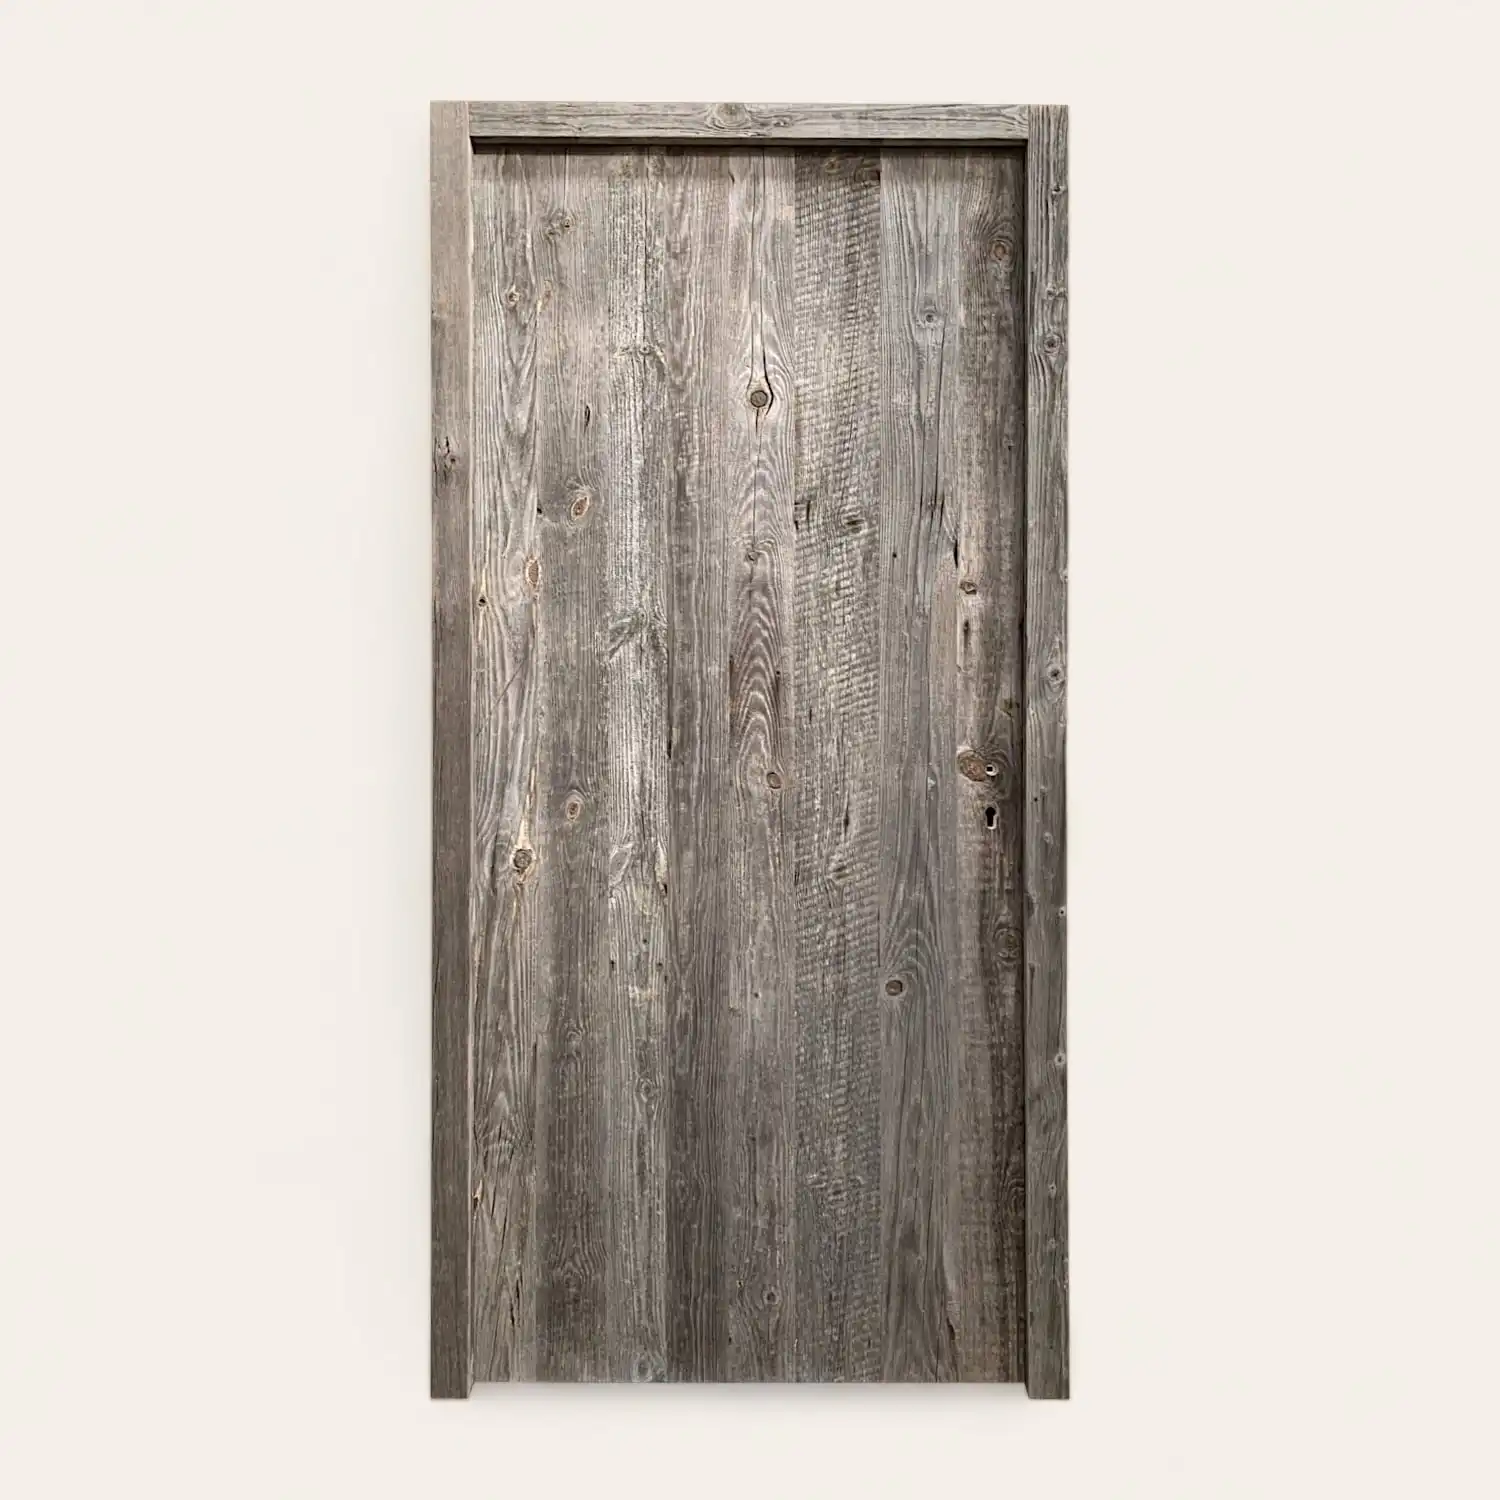  Une porte en bois ancien gris sur fond blanc. 